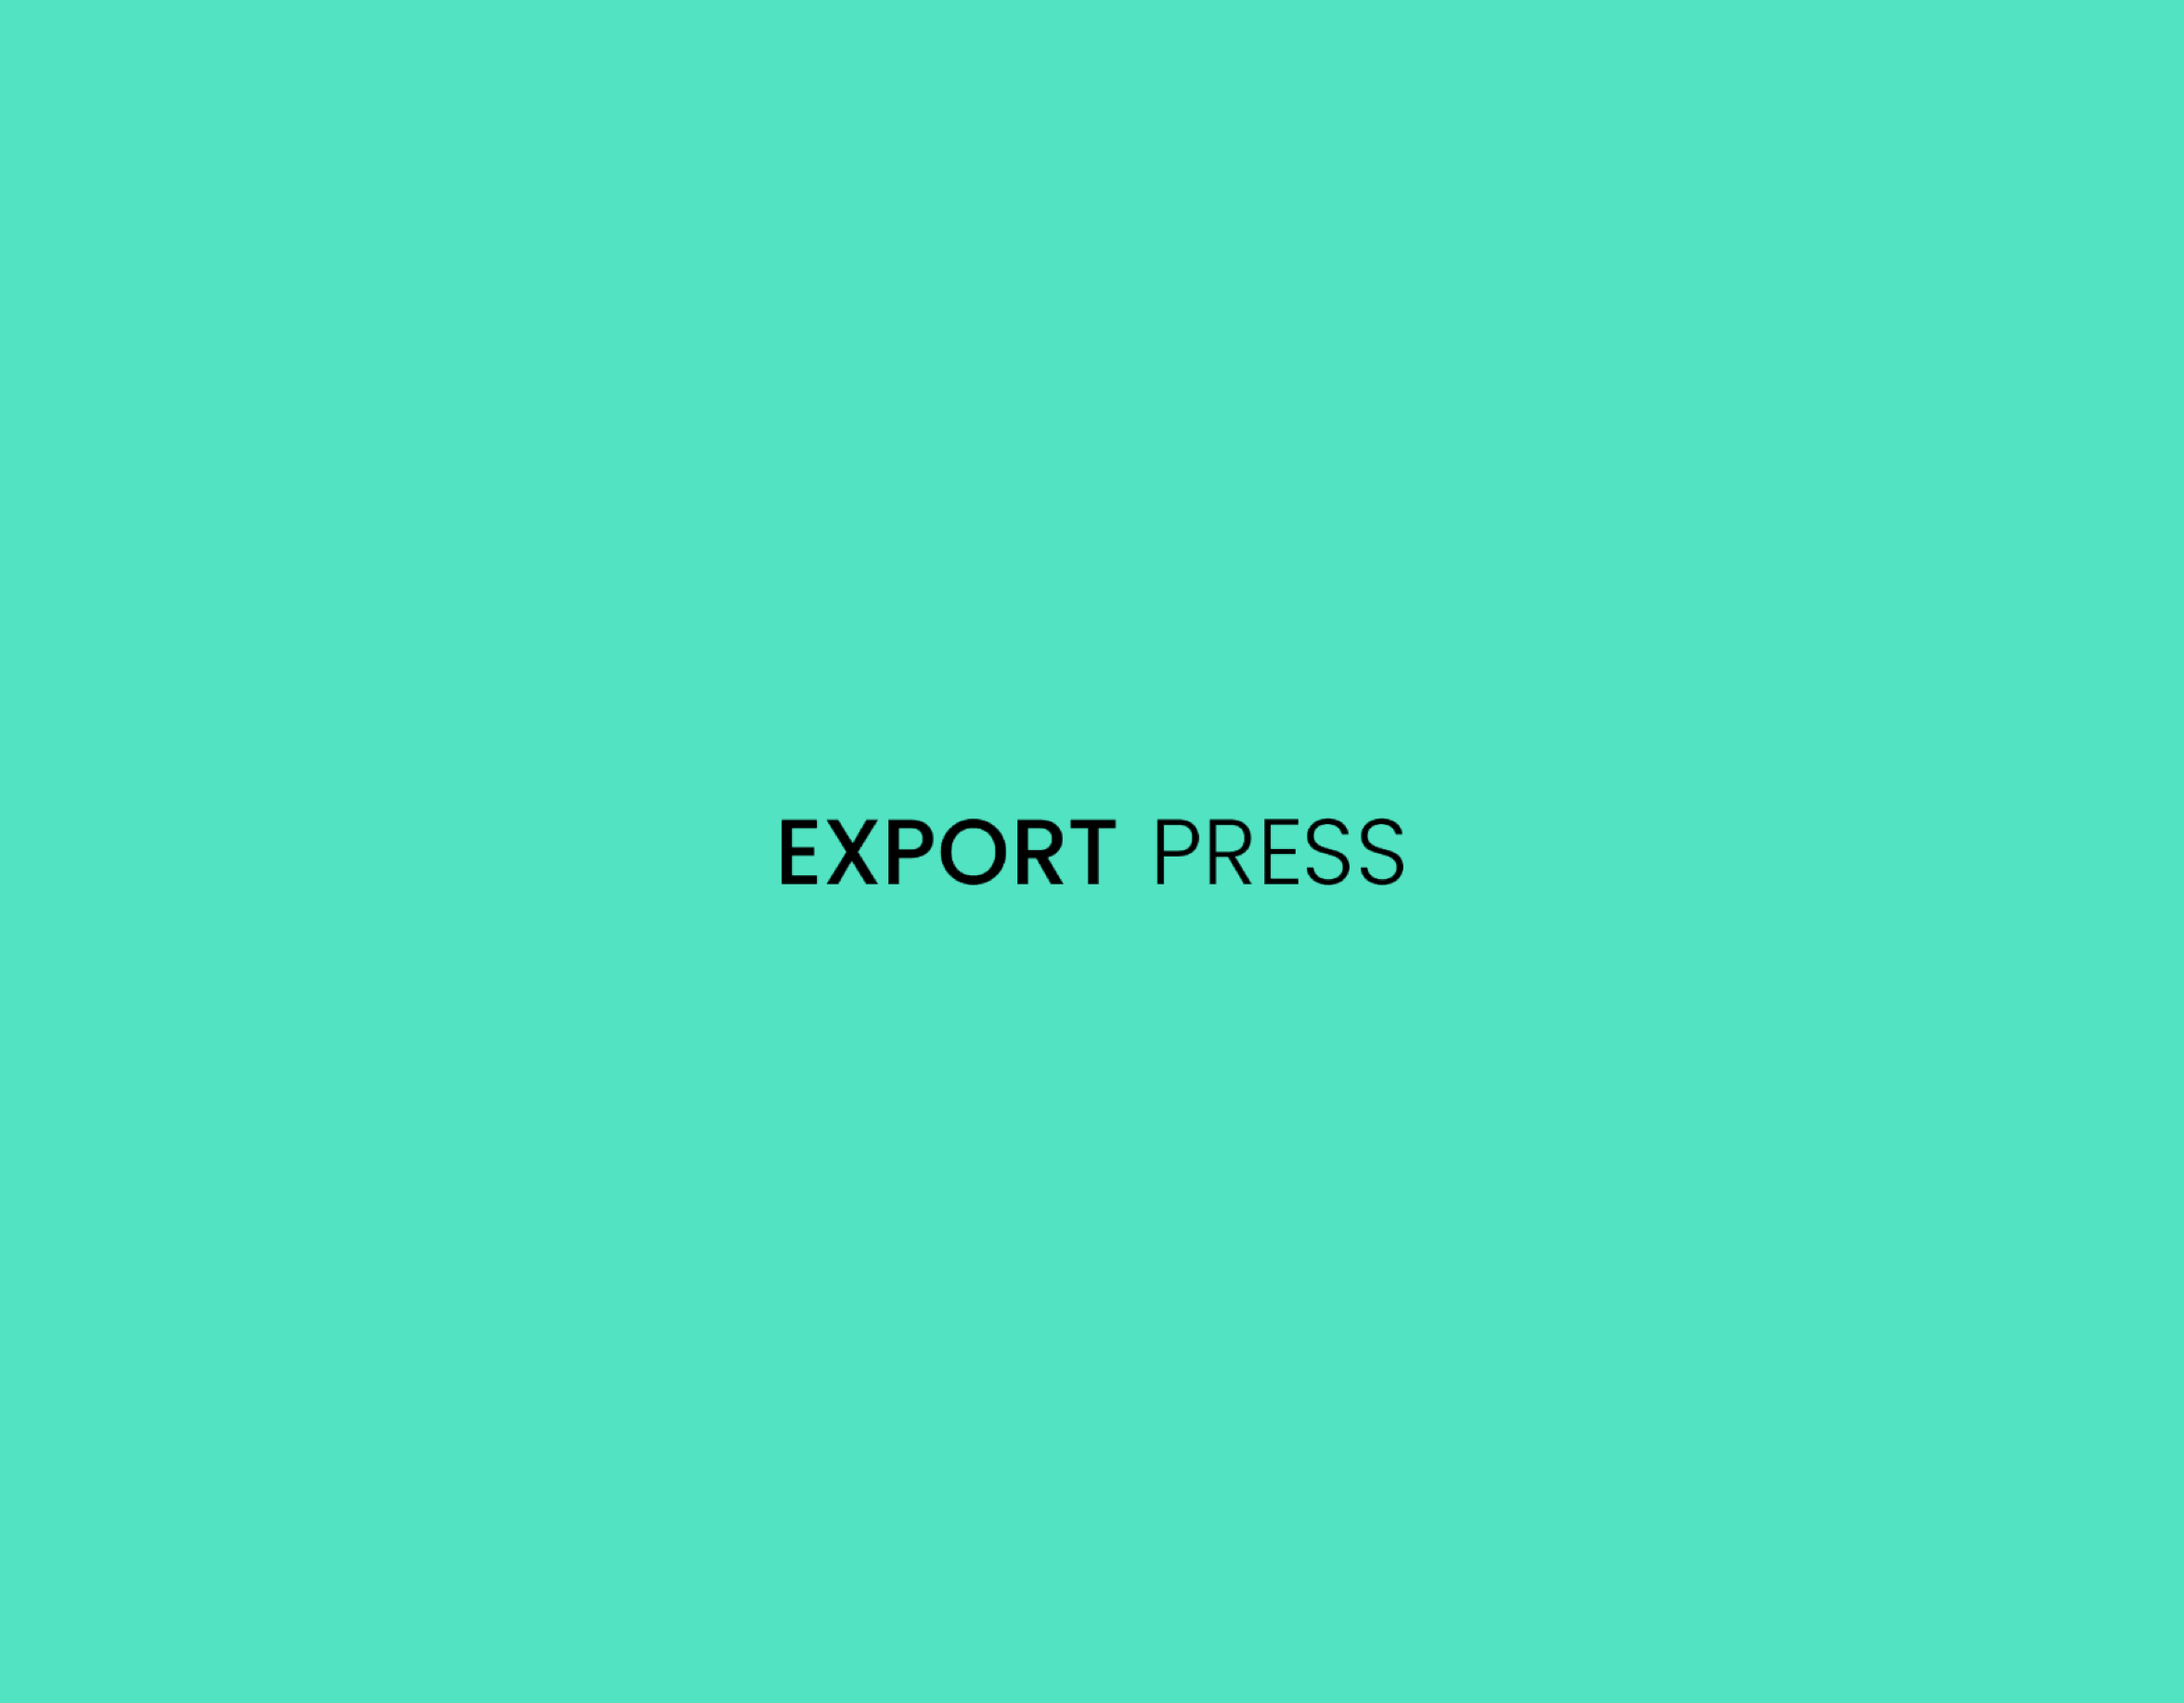 Exportpress